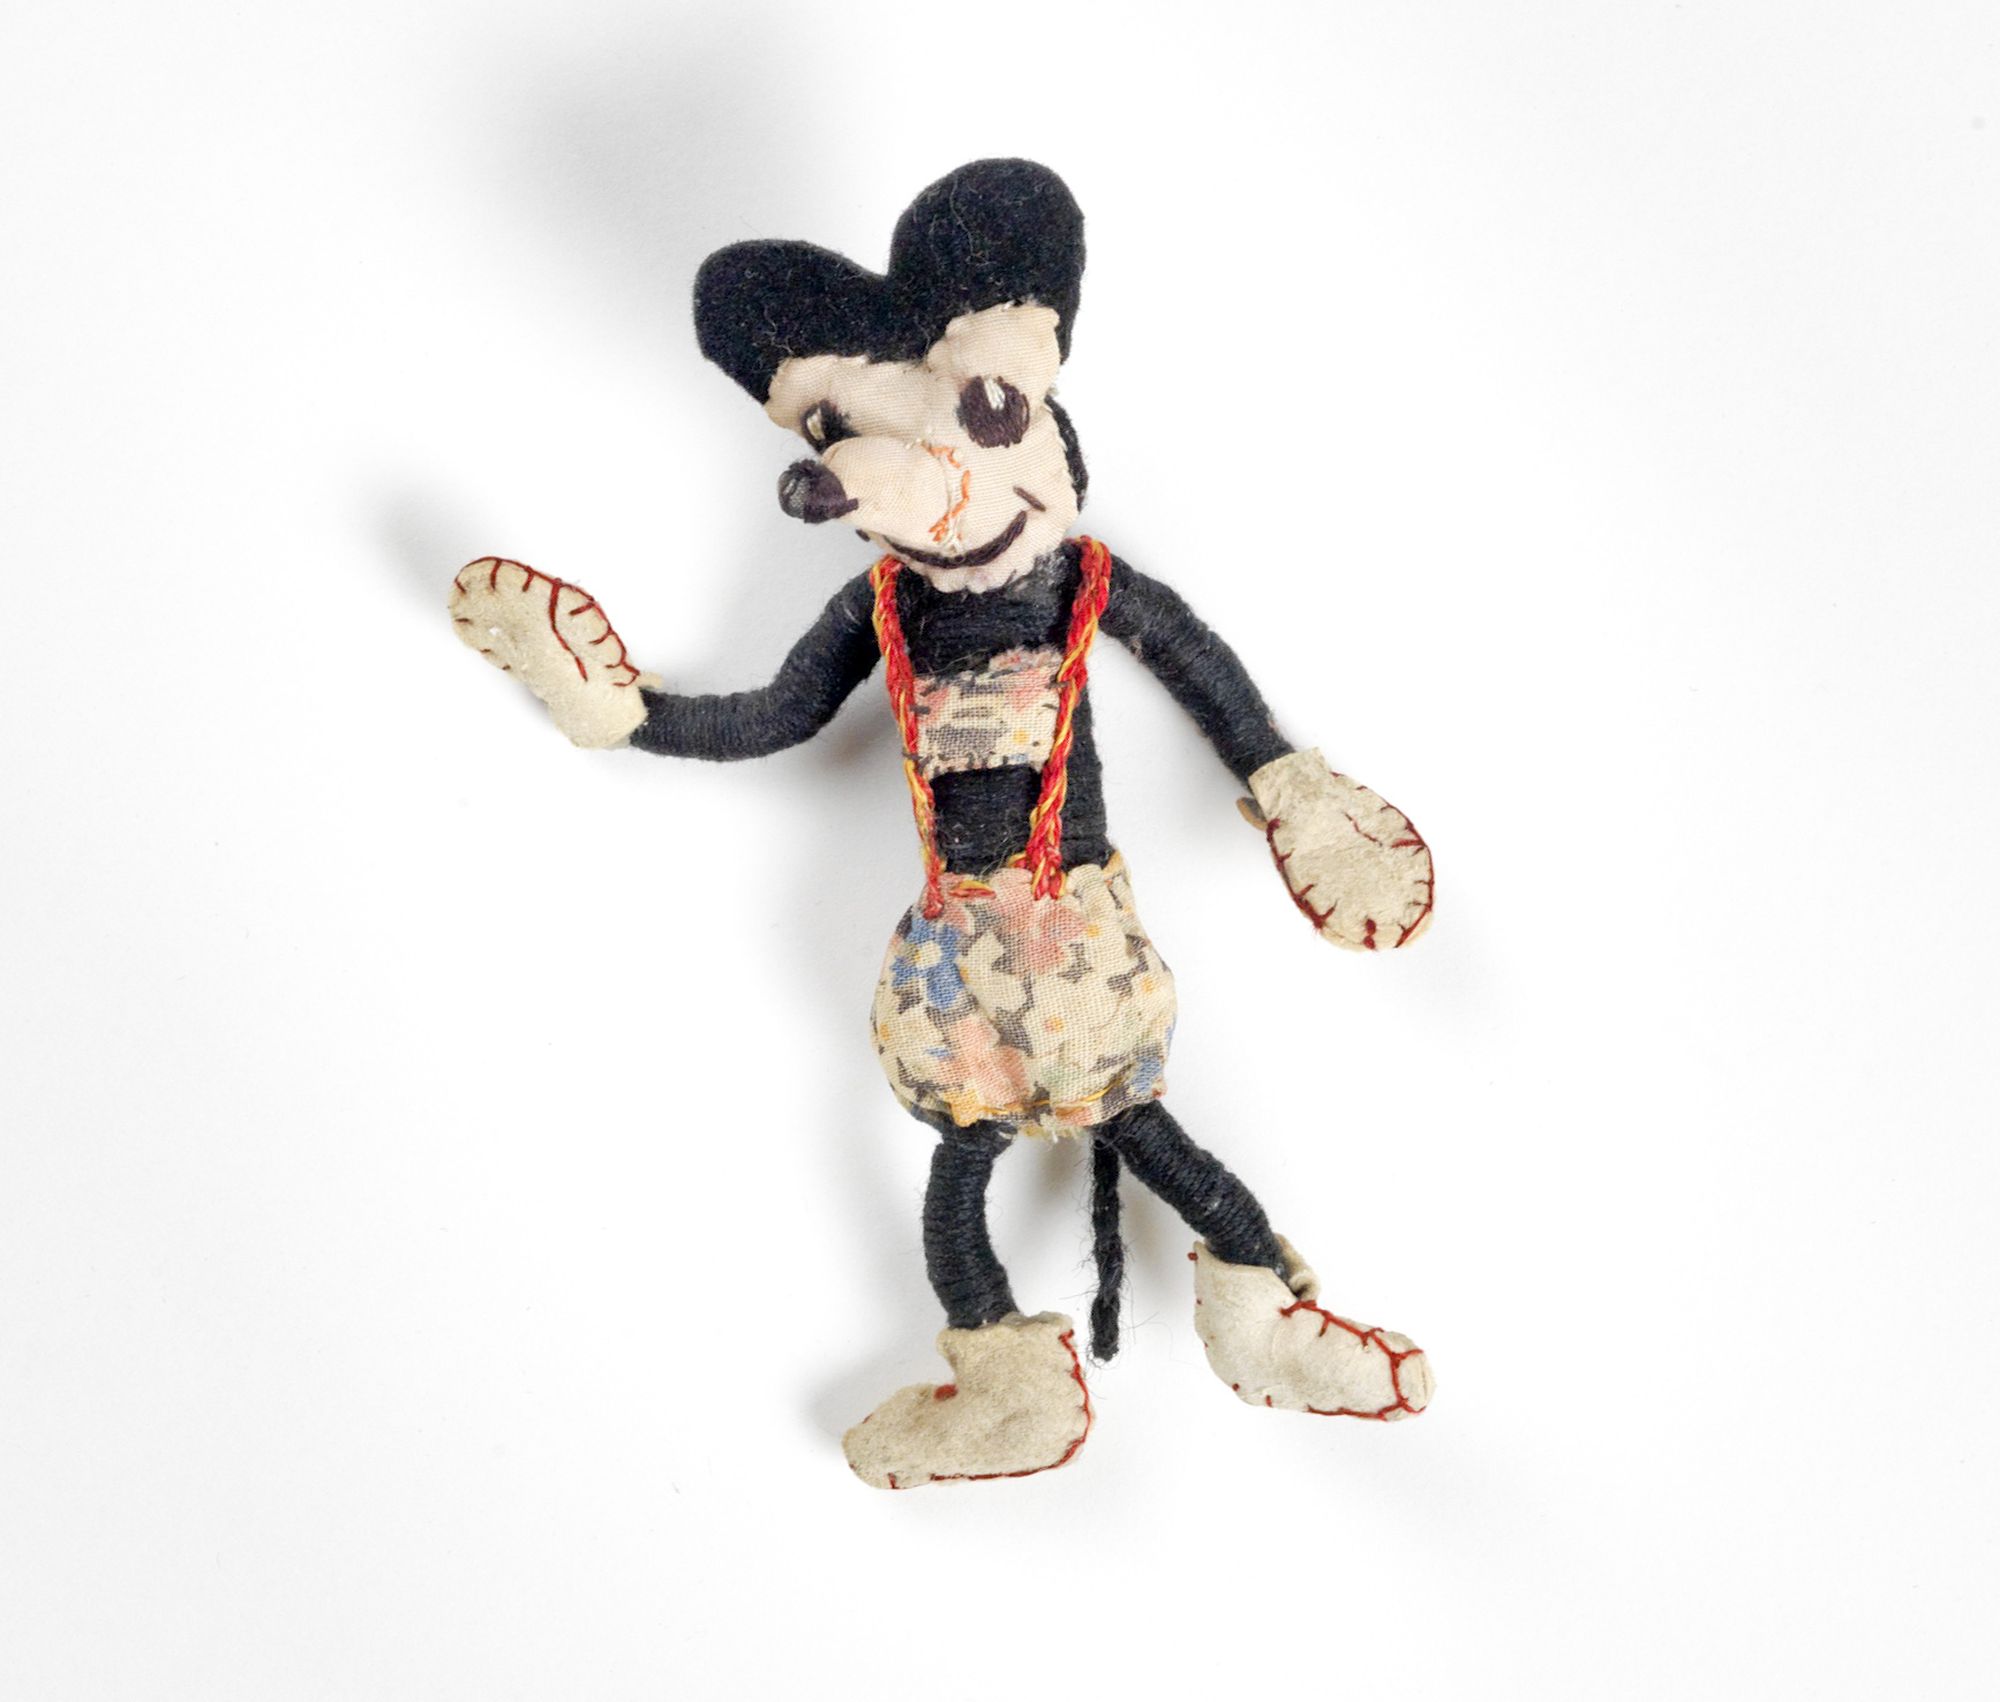 Handgefertigte Mickey-Maus-Puppe aus bunten Stoffresten mit großen schwarzen Ohren